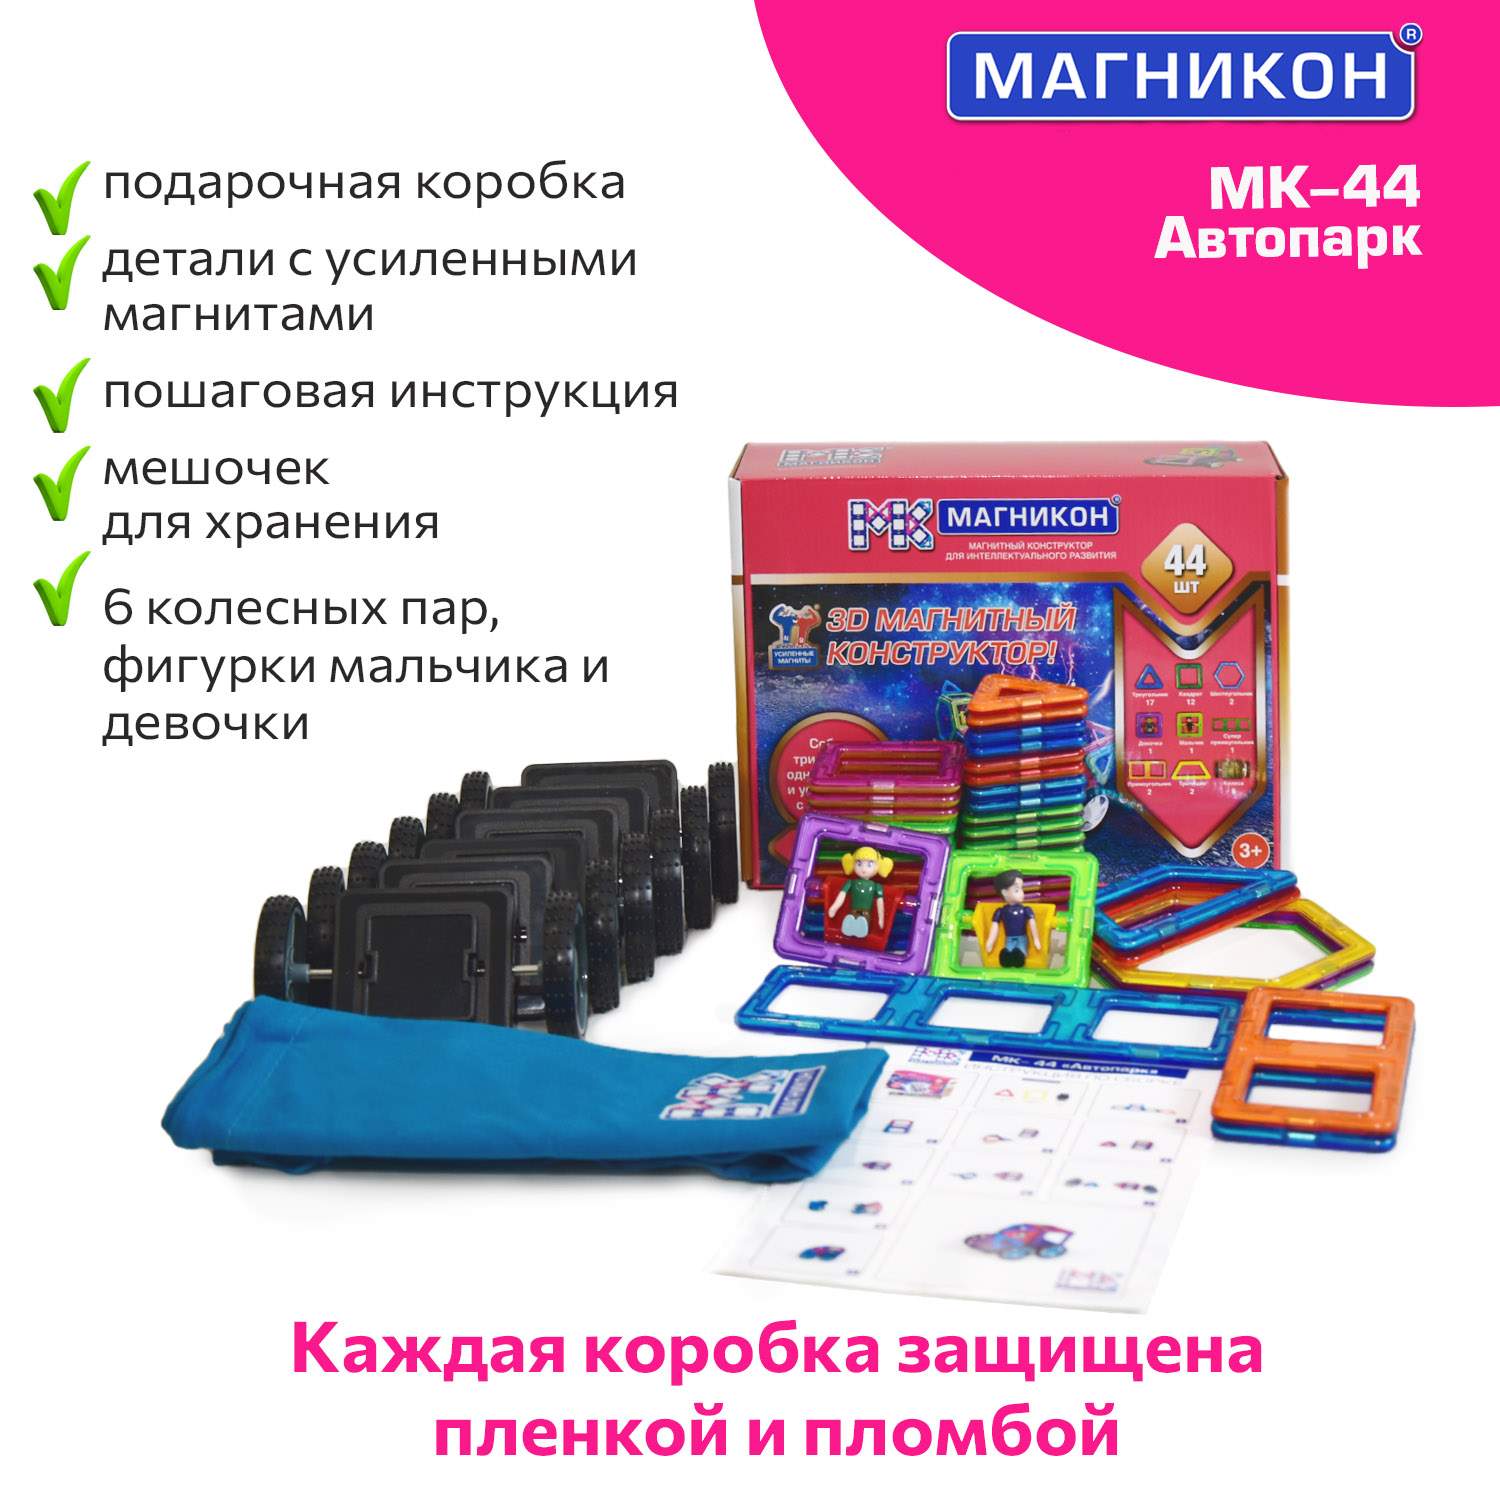 Купить матрешку-магнит для мастер-класса у официального производителя ООО Промысел